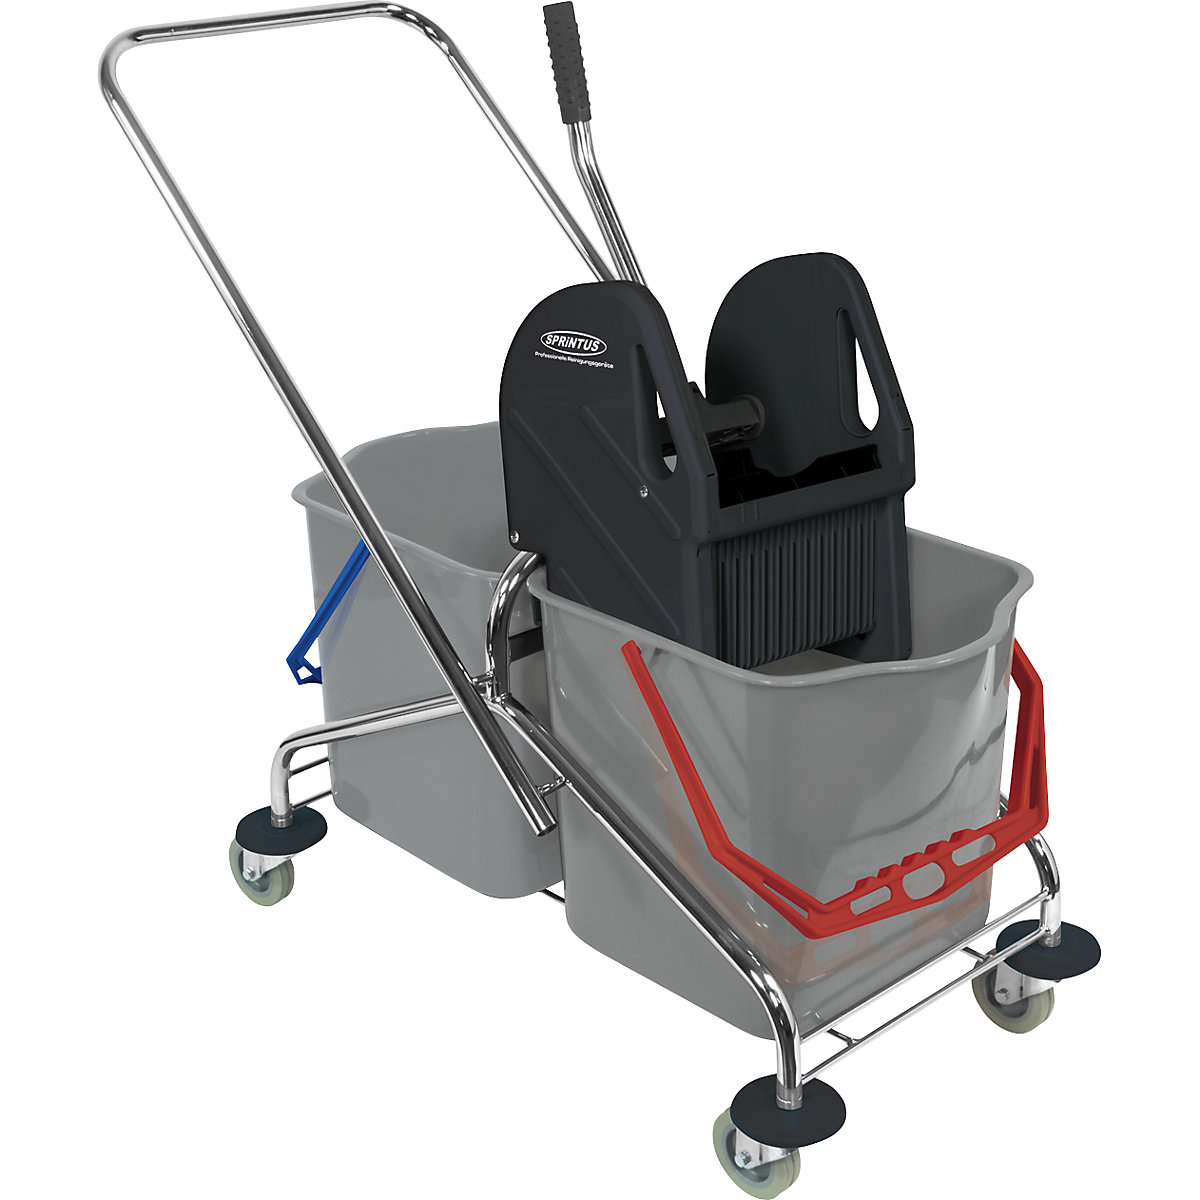 Chariot de nettoyage: chariot de 1 seau de 27 litres avec barre de poussée